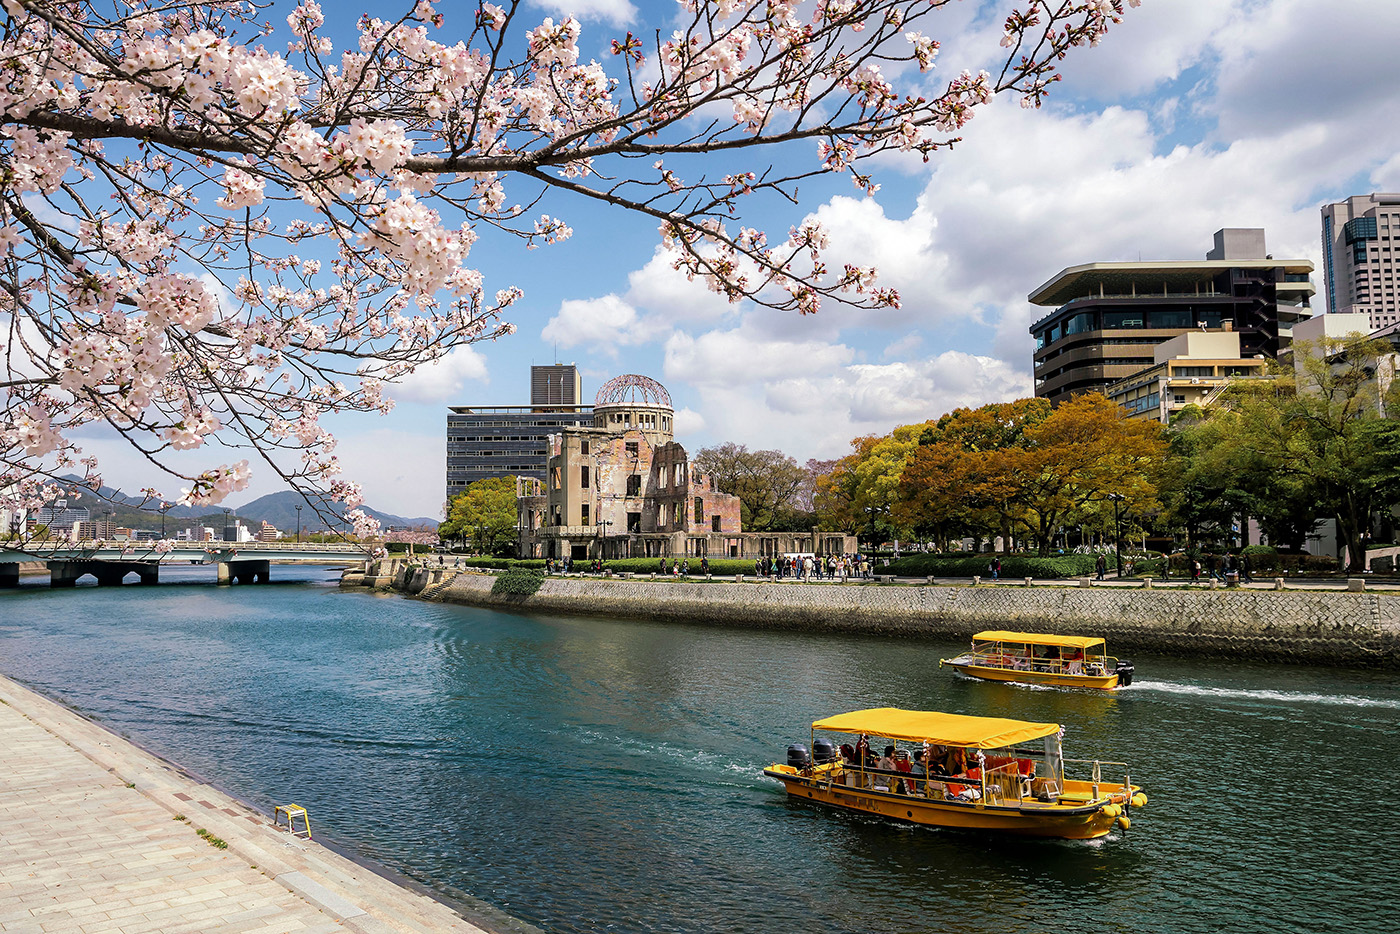 Les fleurs de cerisiers apportent une touche de douceur au dôme de la bombe atomique de Hiroshima, créant un tableau simple mais saisissant